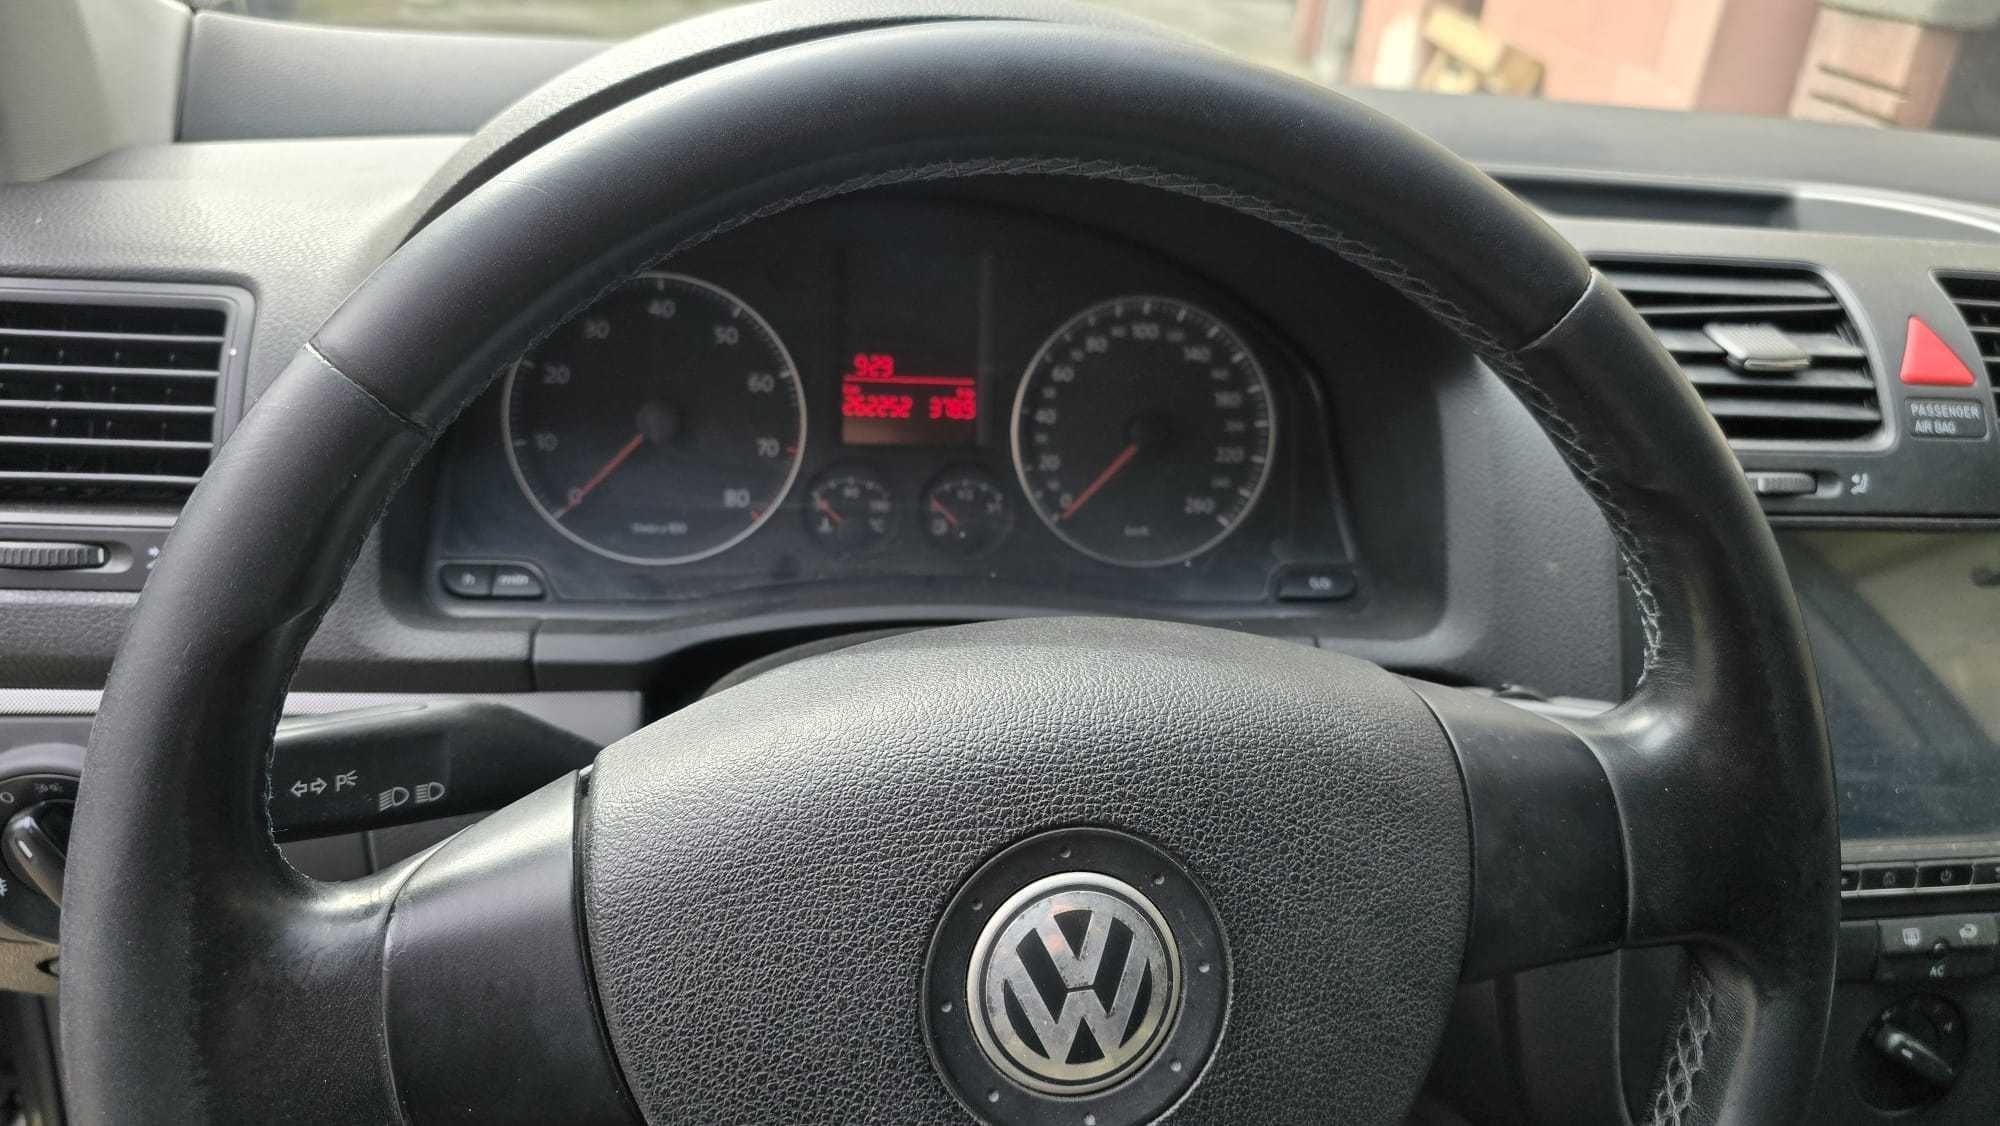 Volkswagen Golf 5 1.6 benzina + gpl